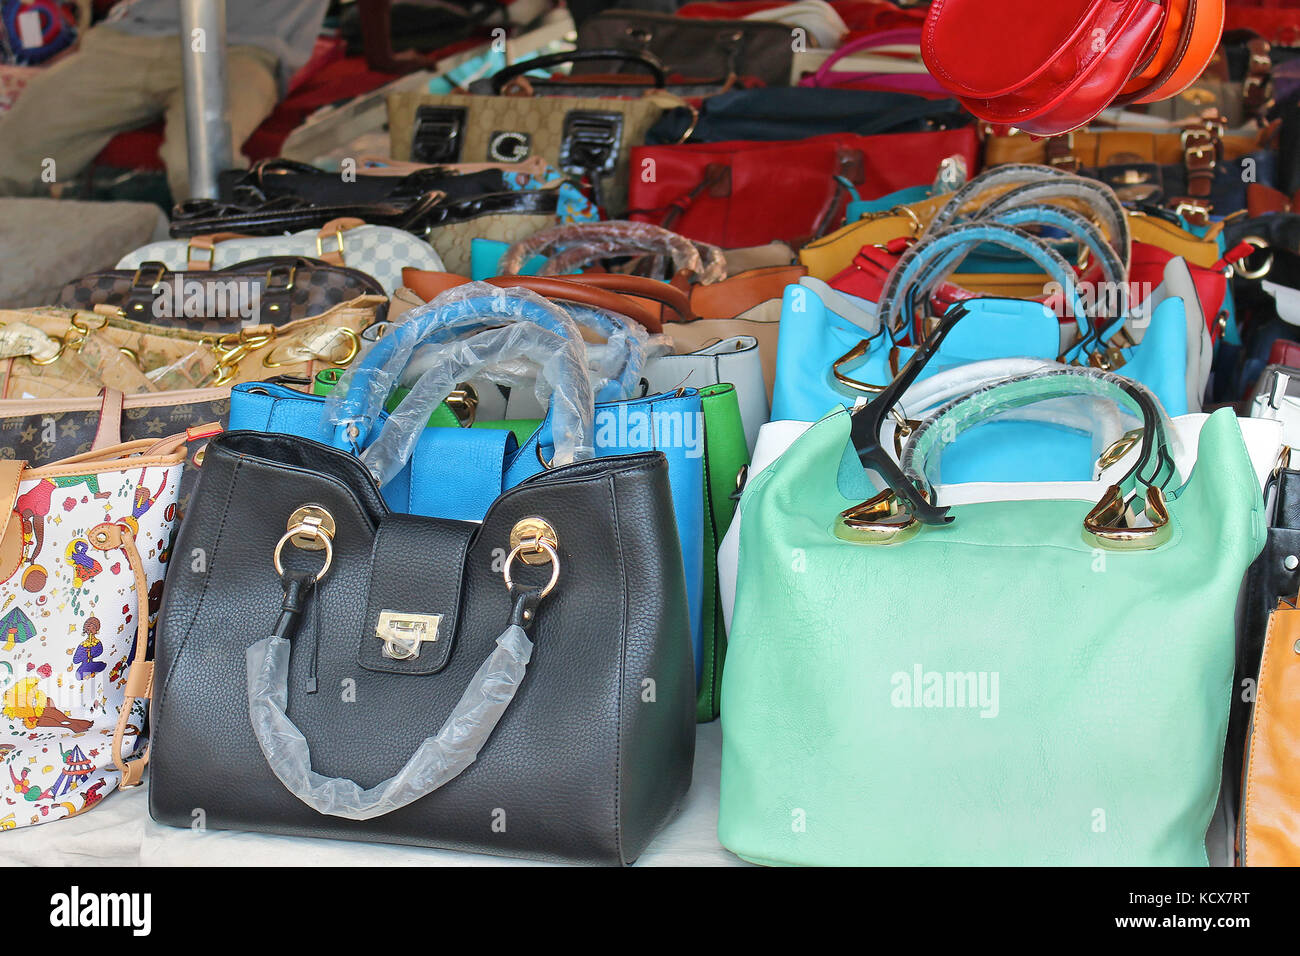 Rome, Italie - 29 juin 2014 : grande pile de sacs à main contrefaits  colorés de célèbres marques